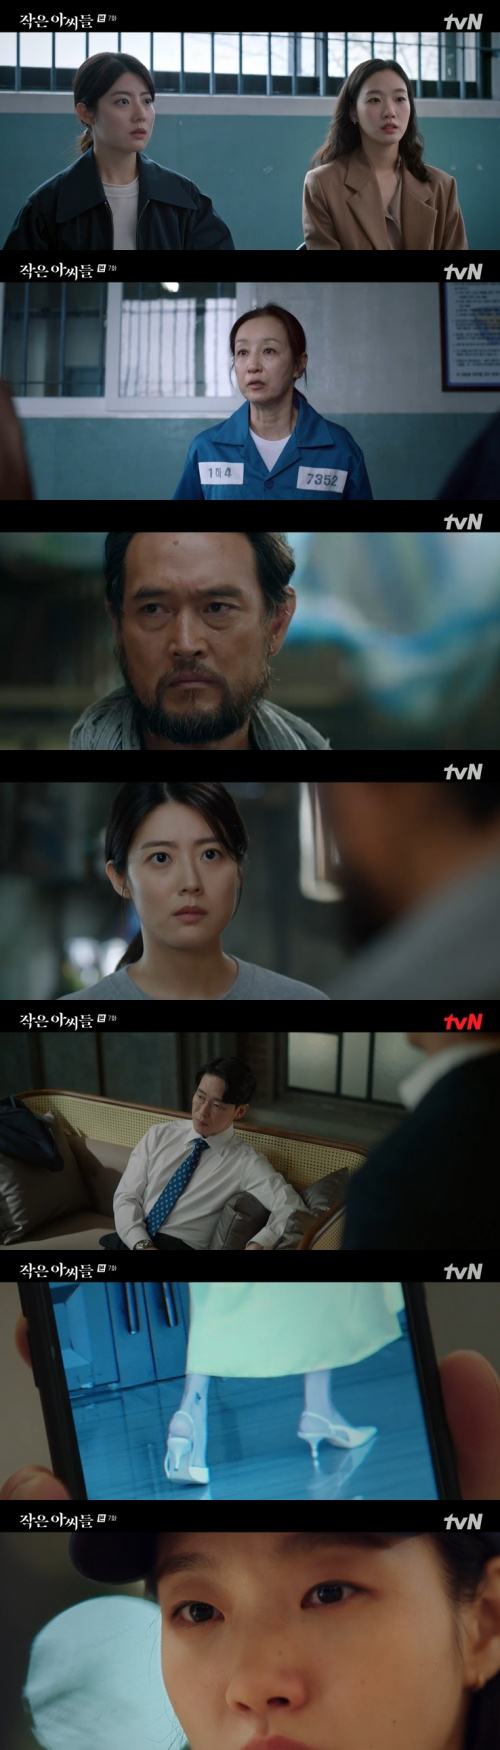 /사진=tvN 주말드라마 '작은 아씨들' 방송 화면 캡쳐